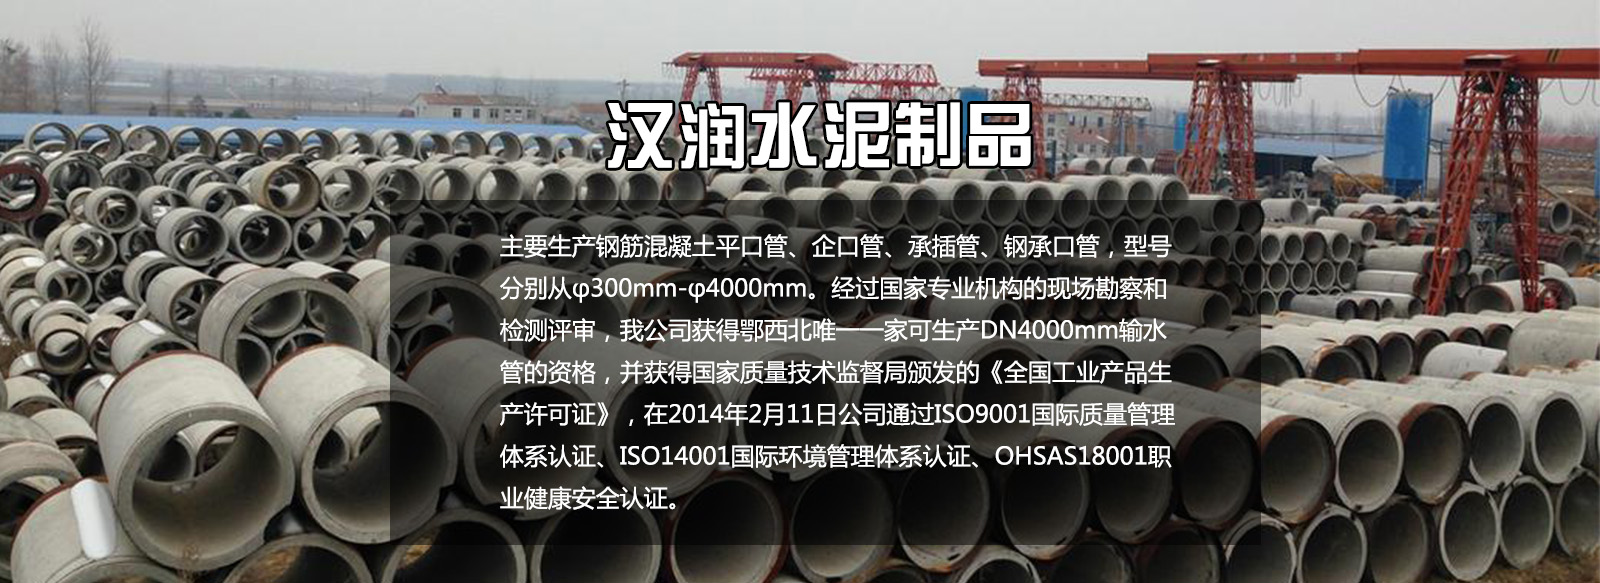 武汉水泥管今年是水泥工业发展的好年头